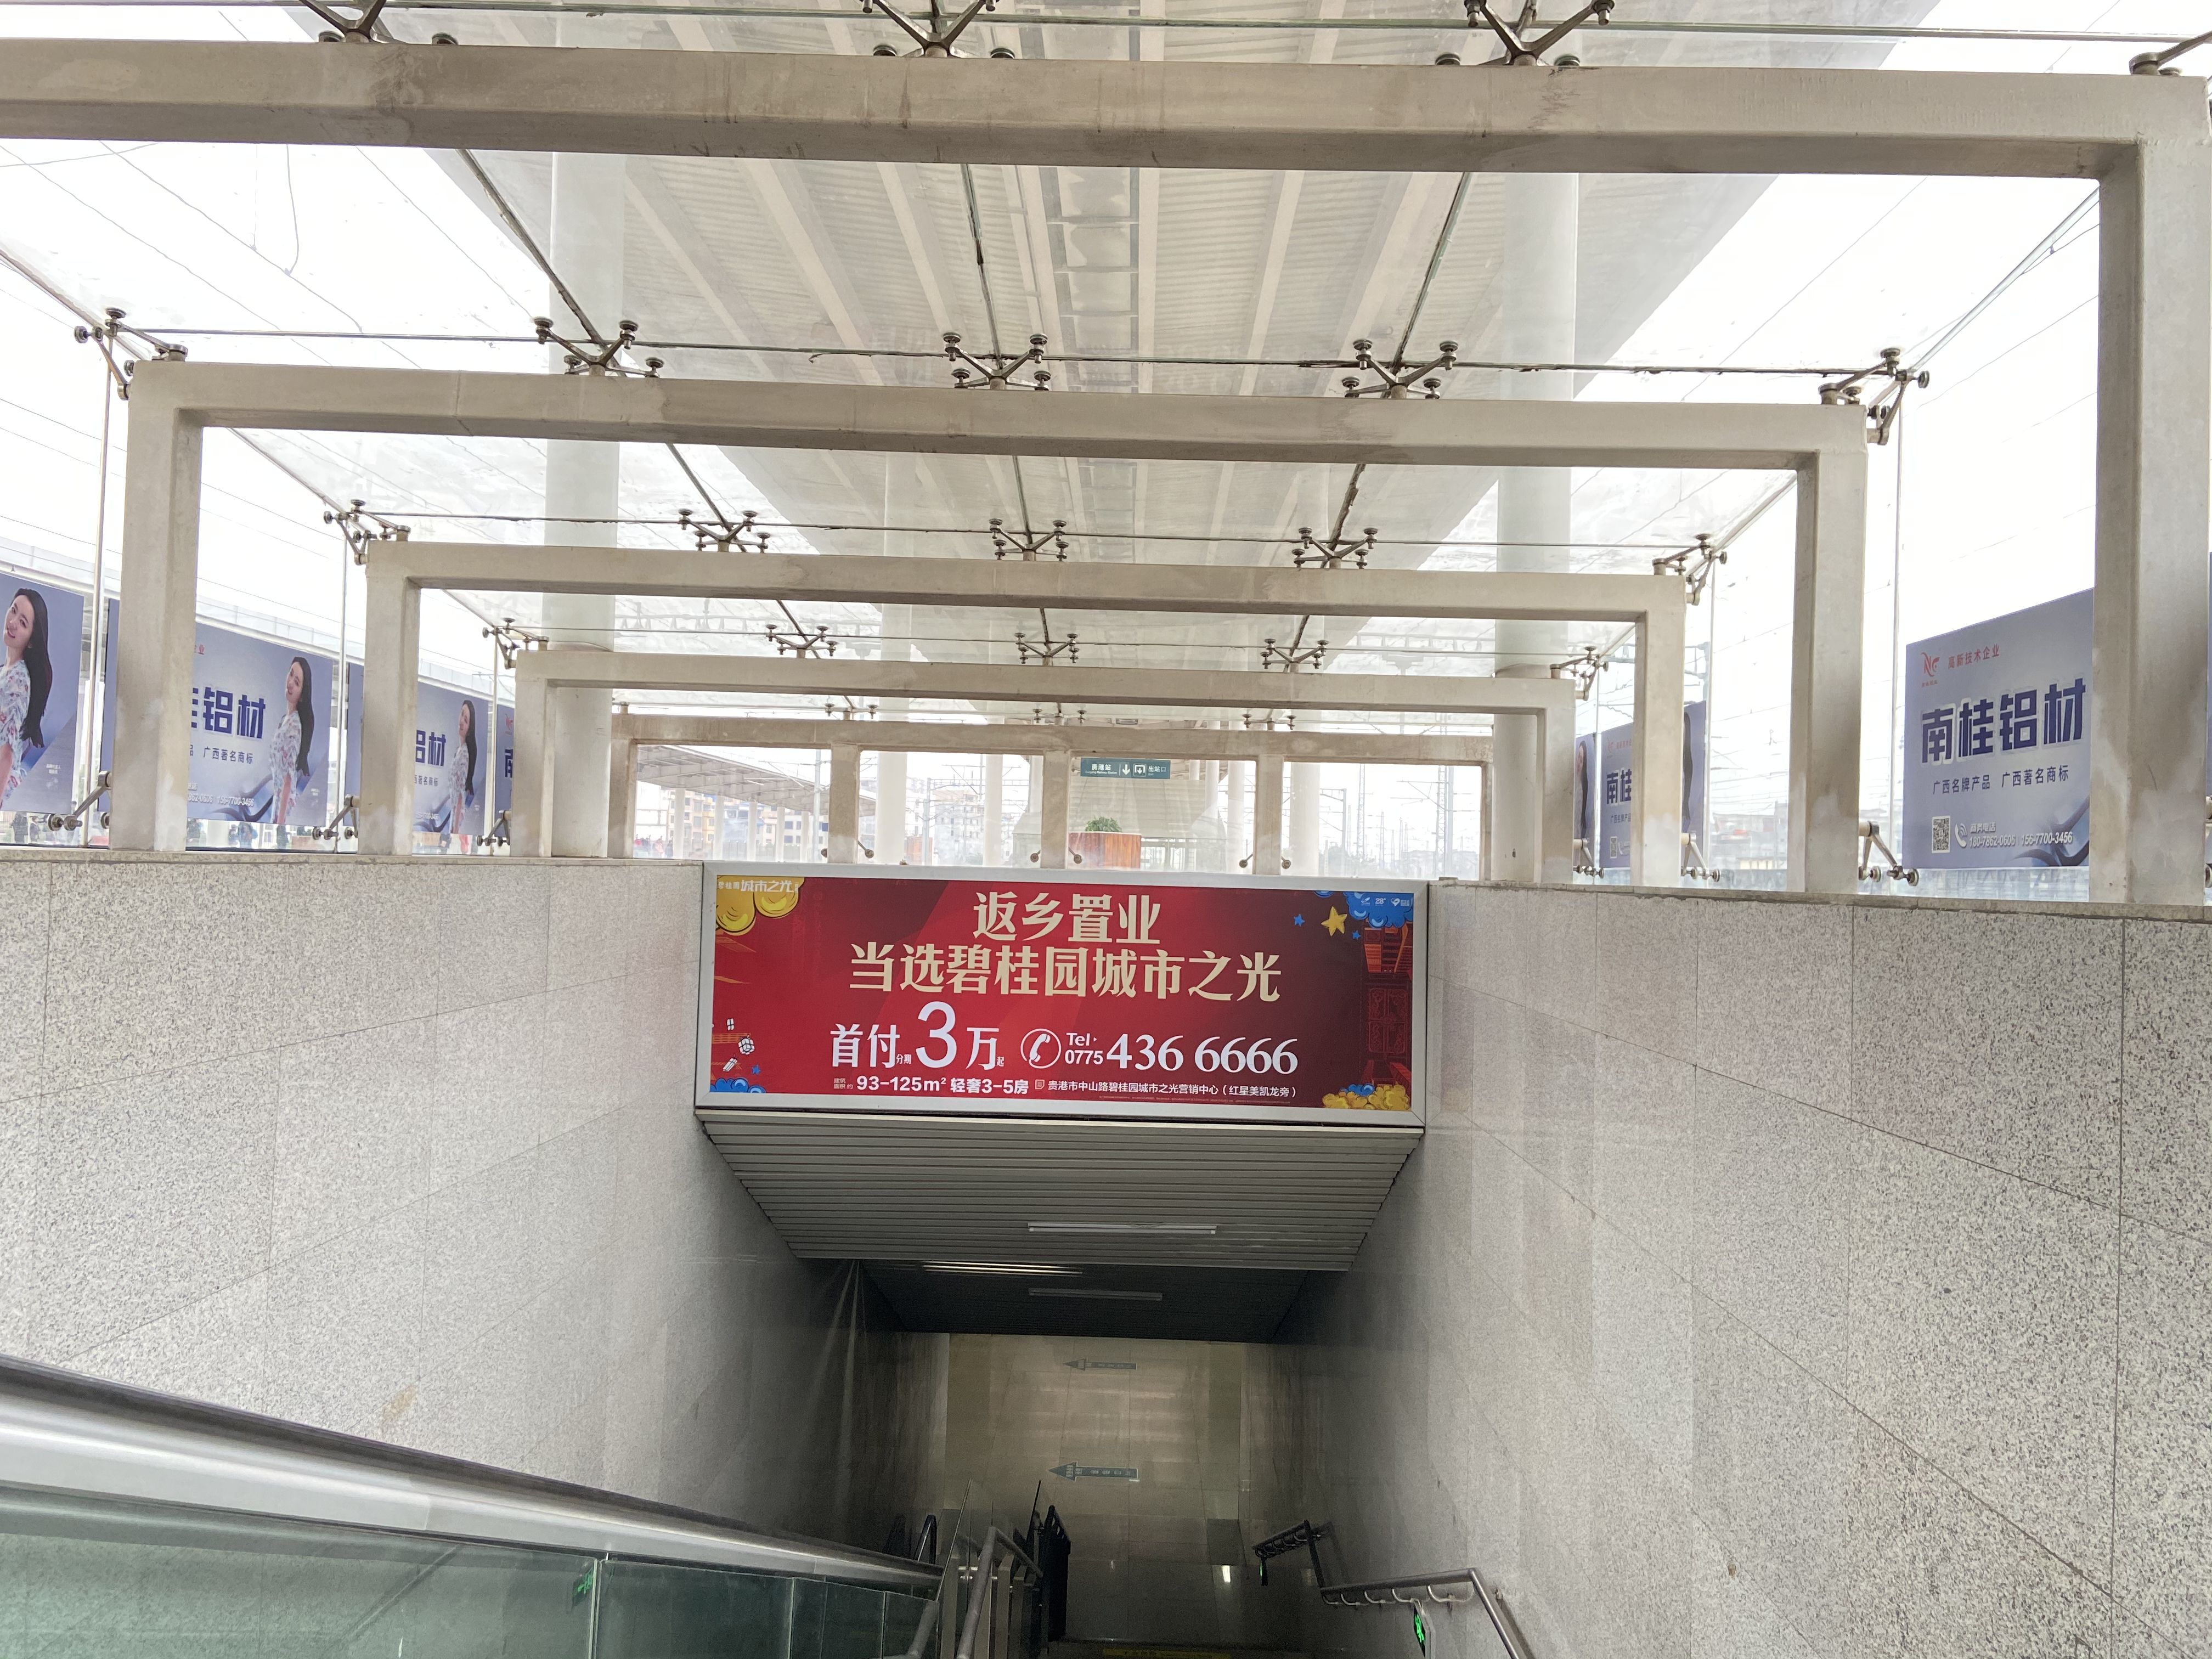 广西贵港贵港站2/3站台出站门楣火车高铁灯箱